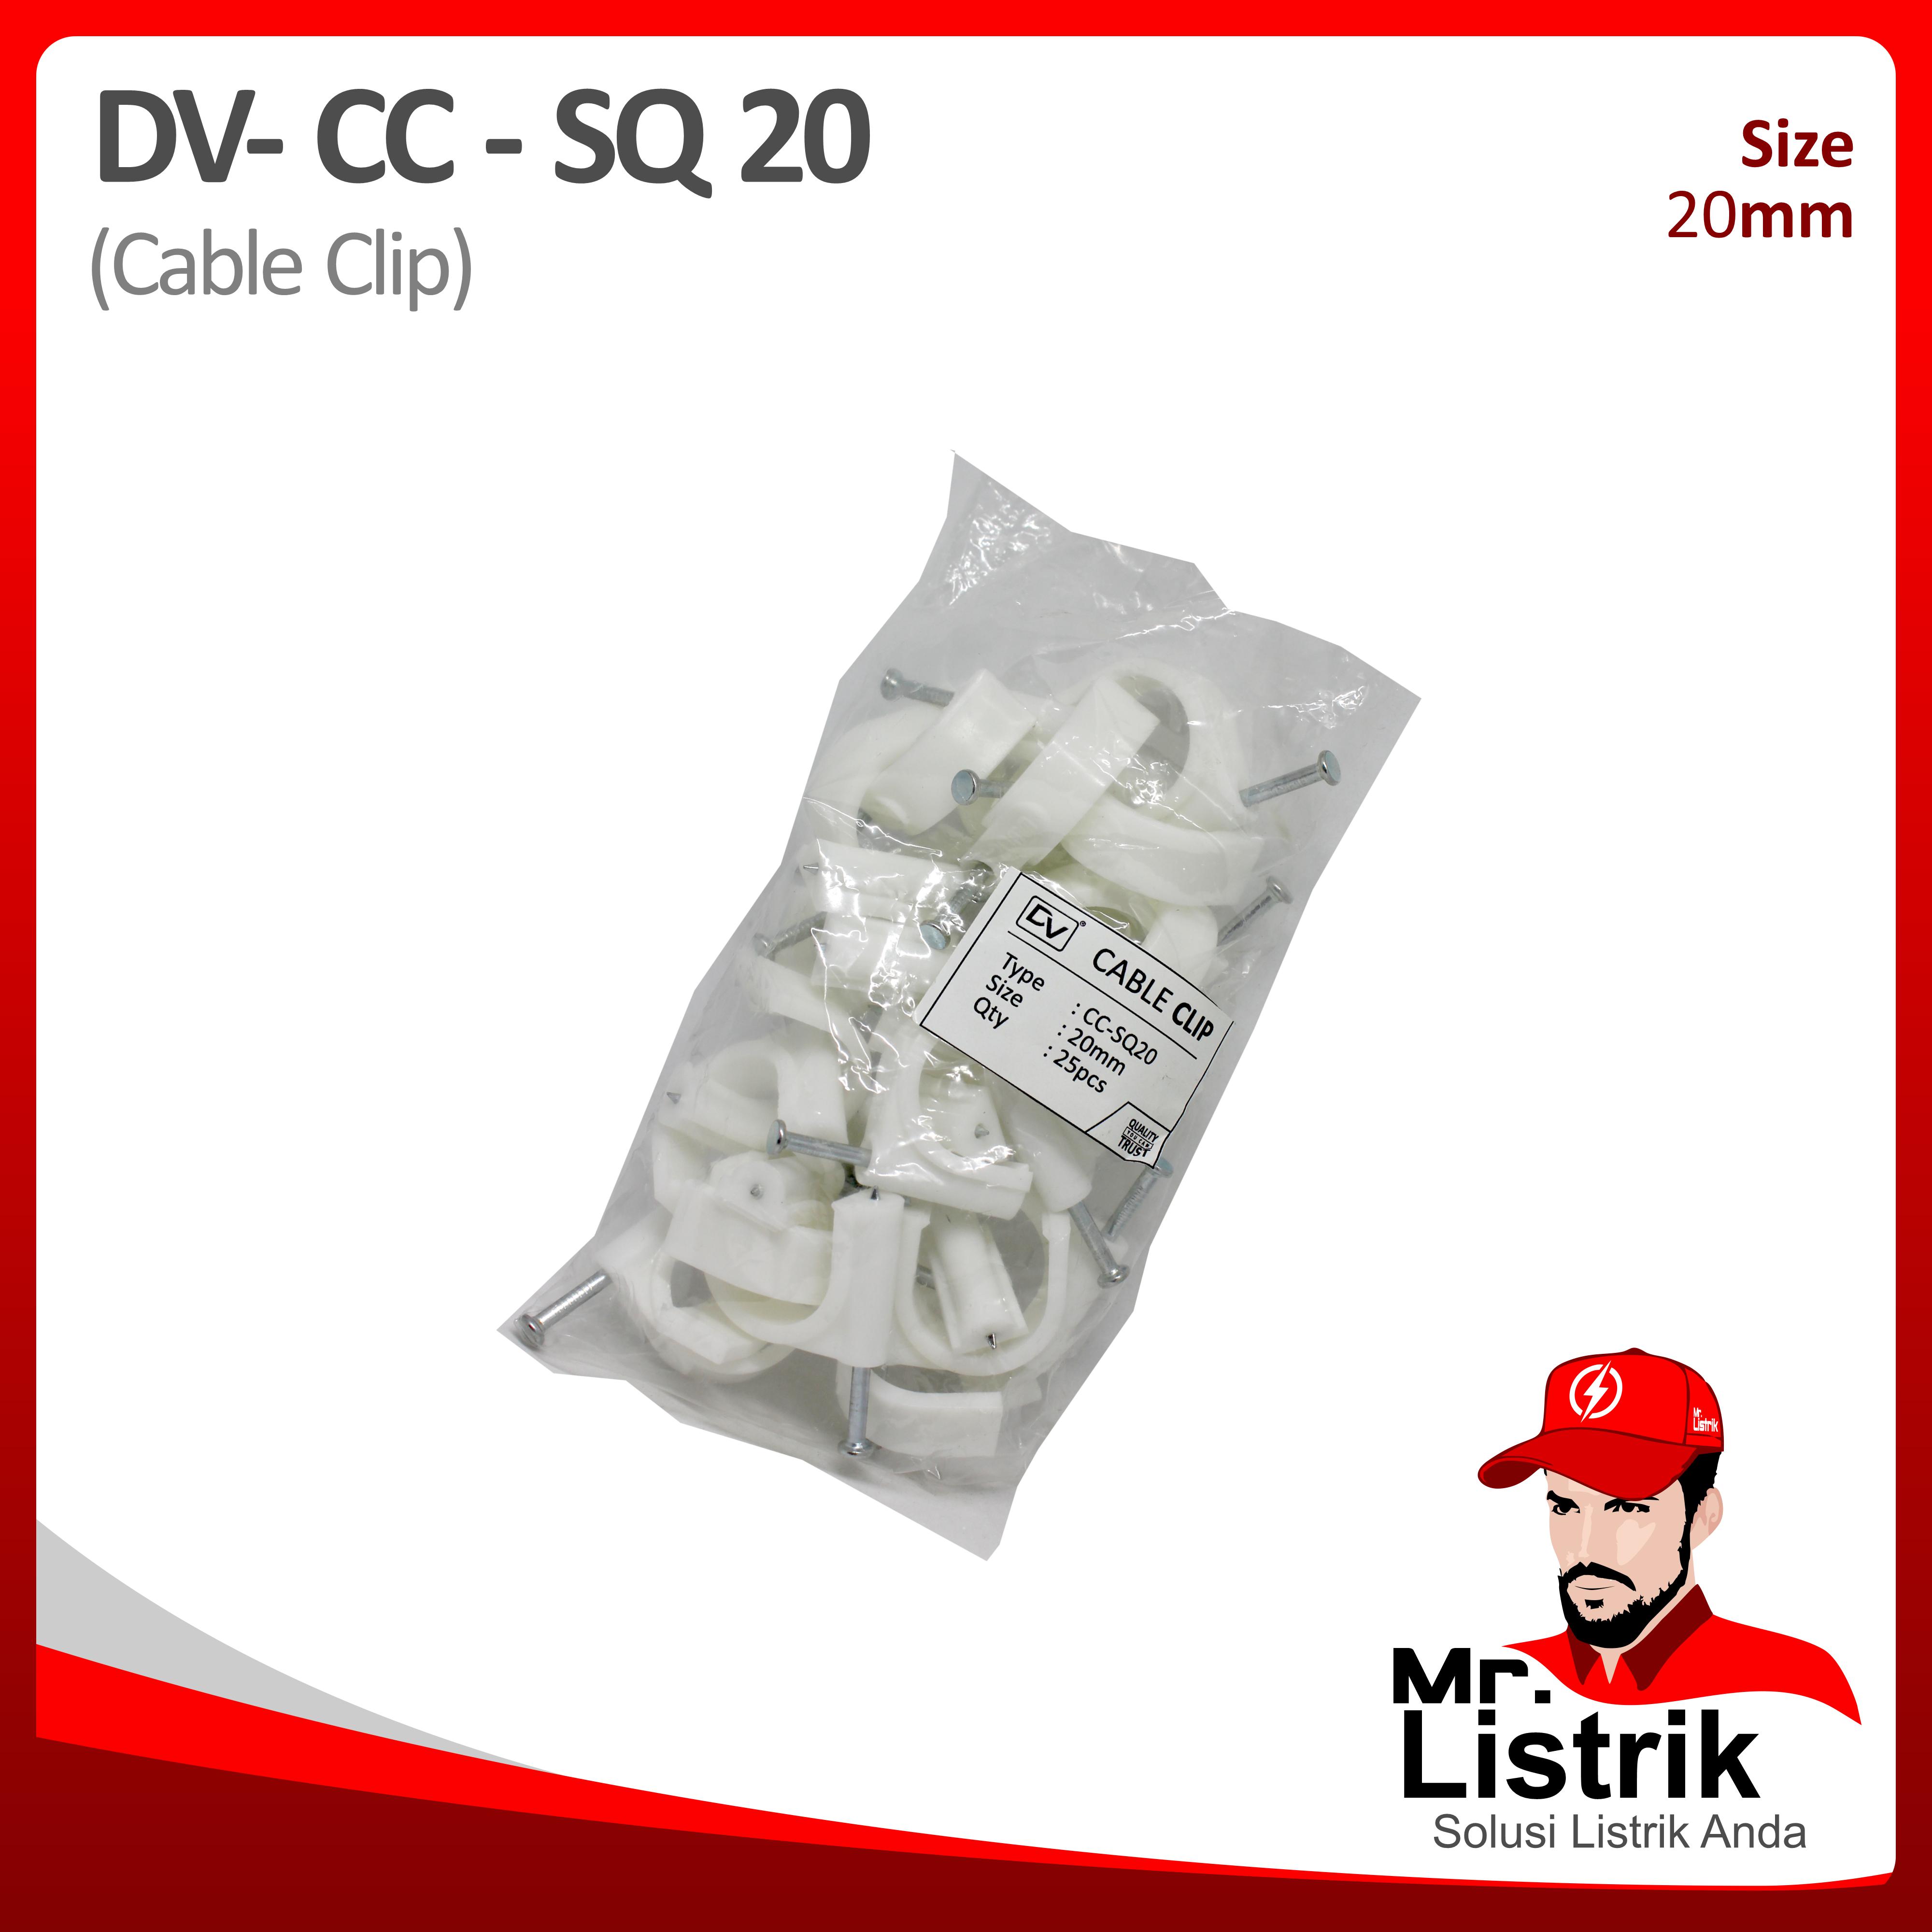 Cable Clip 20mm DV CC-SQ 20